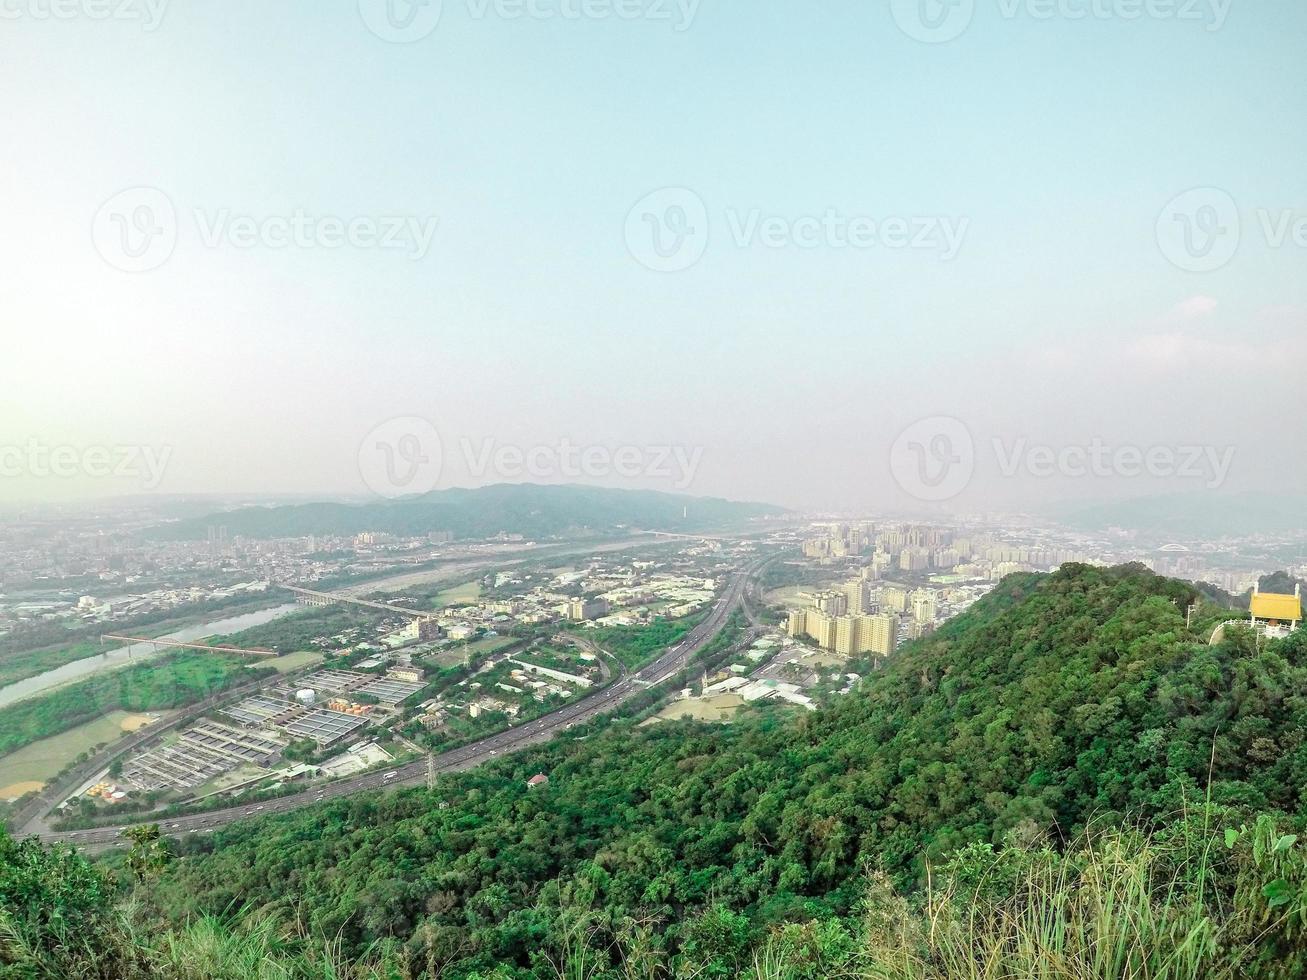 descripción general del paisaje urbano de la ciudad y el montaje, sesión de fotos desde la cima del monte en taipei, taiwán.